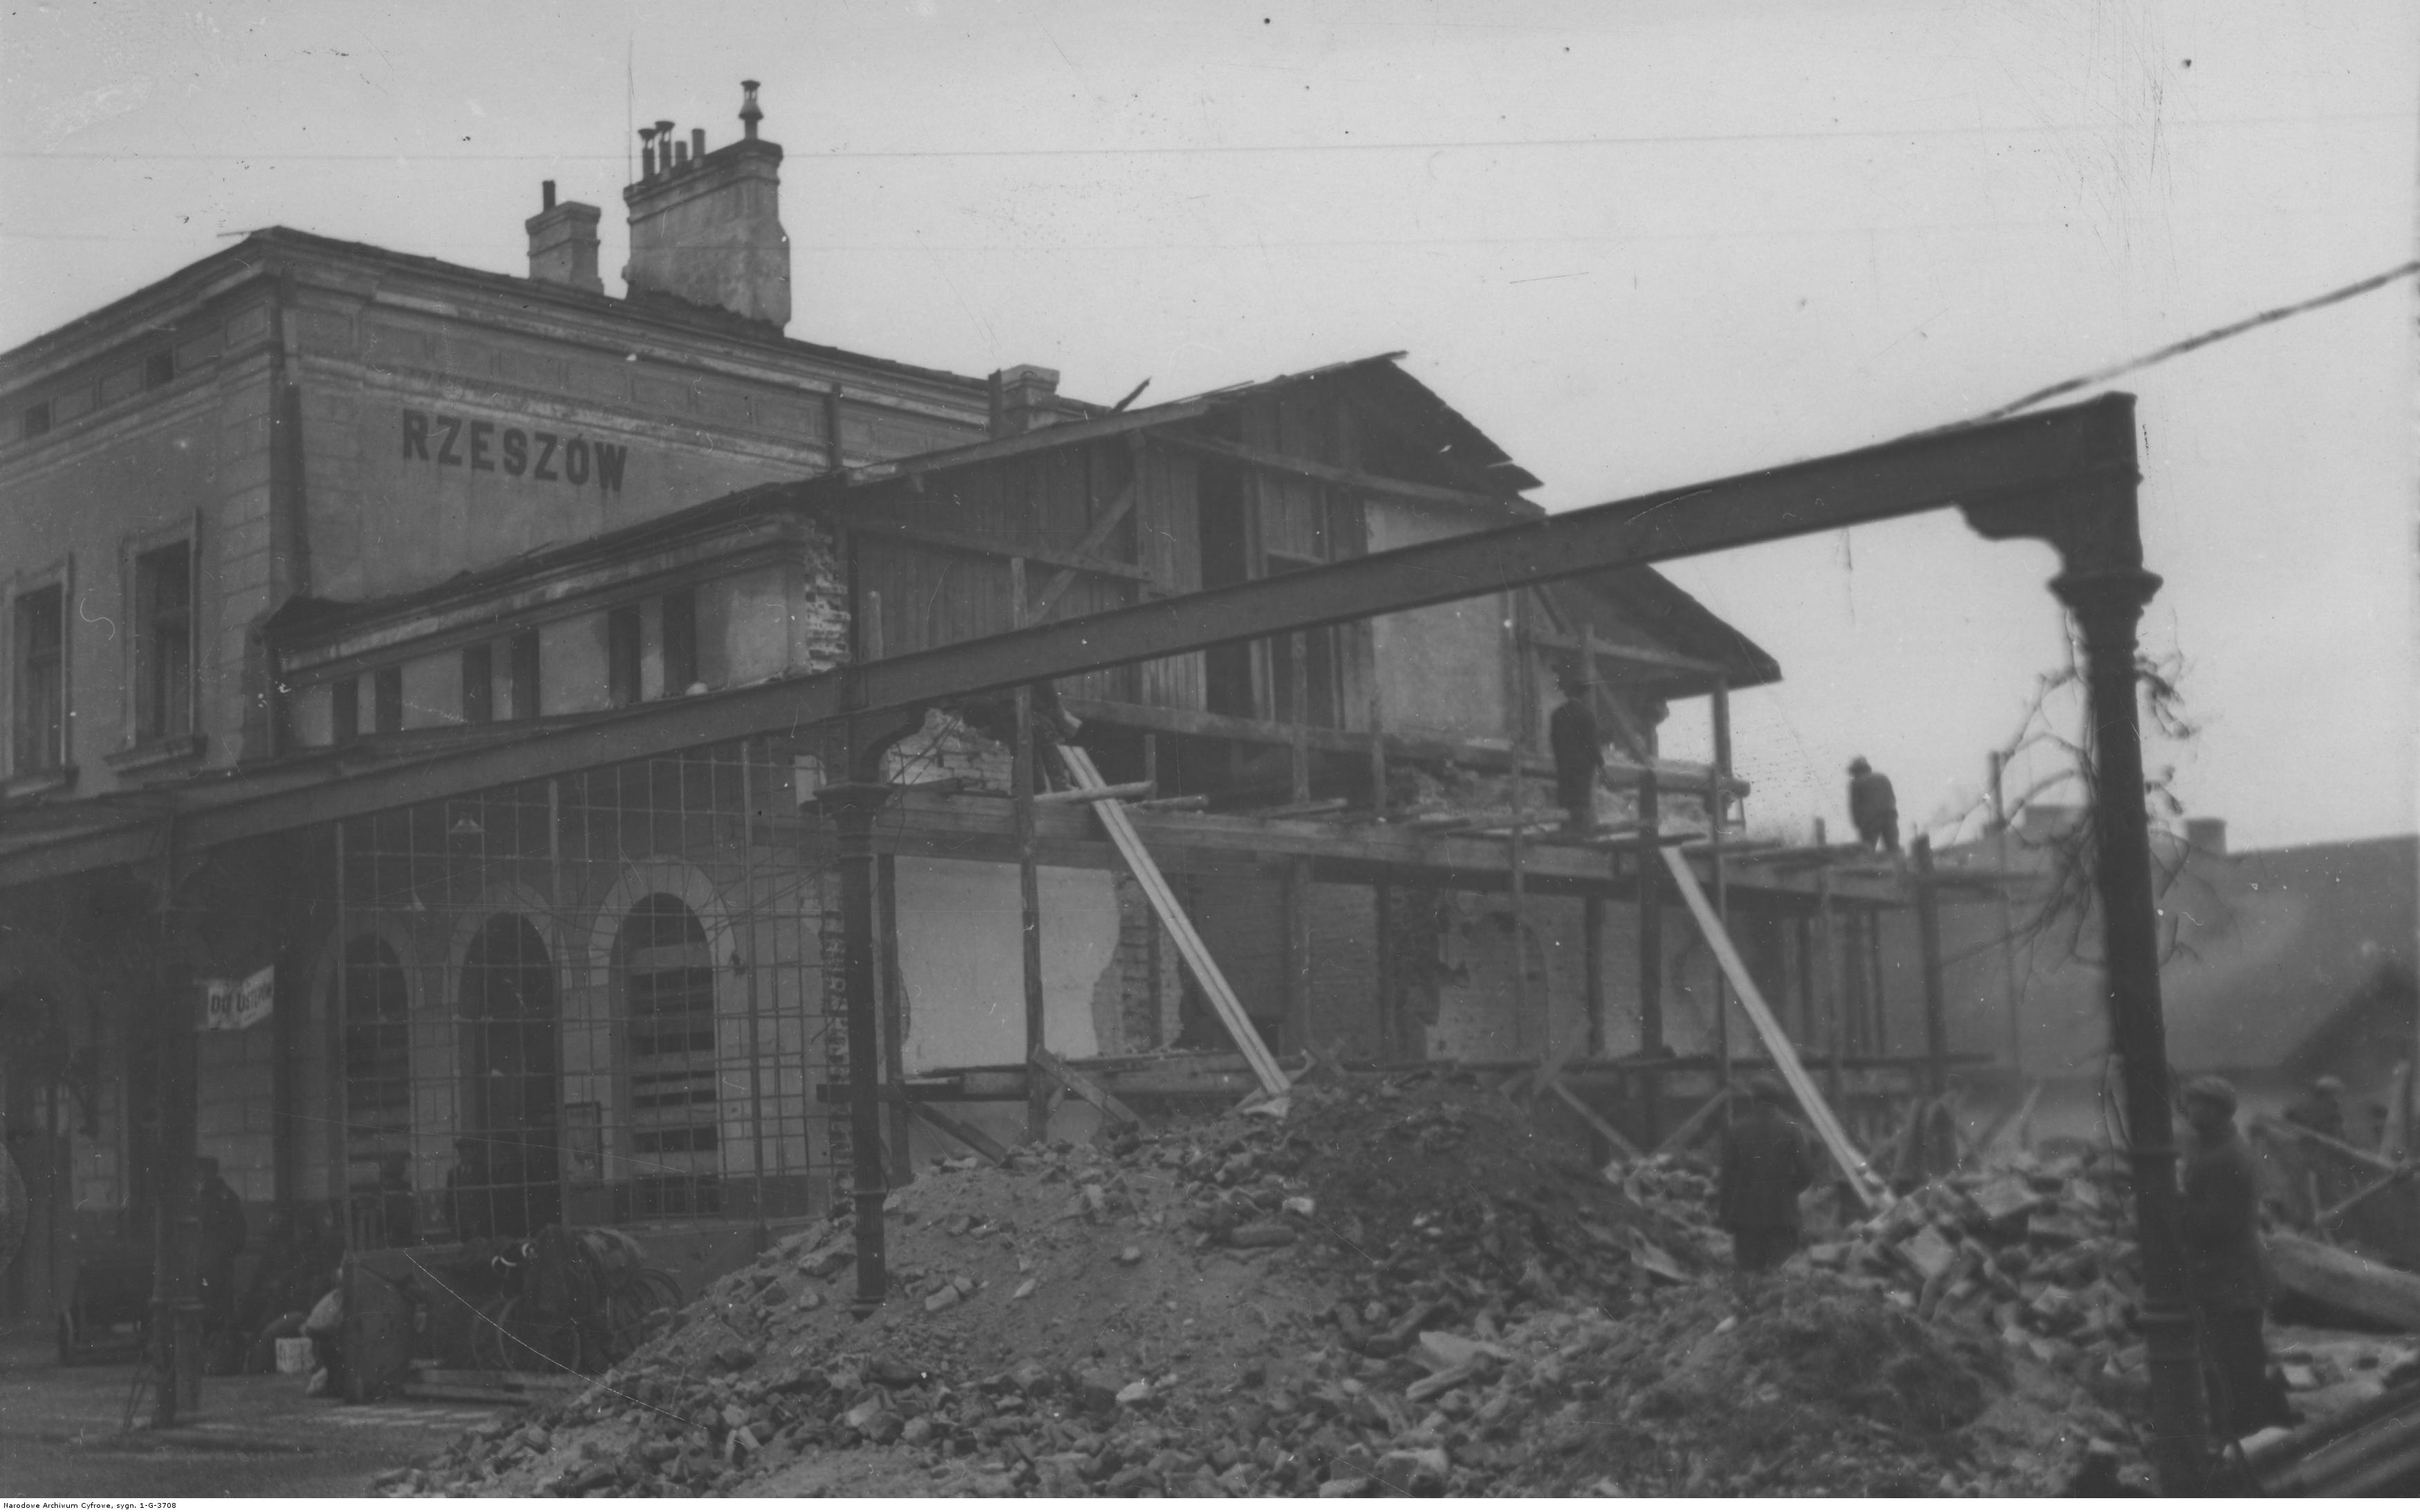 Dworzec kolejowy w Rzeszowie, budynek częściowo zniszczony podczas pierwszej wojny światowej, rok 1914-1918